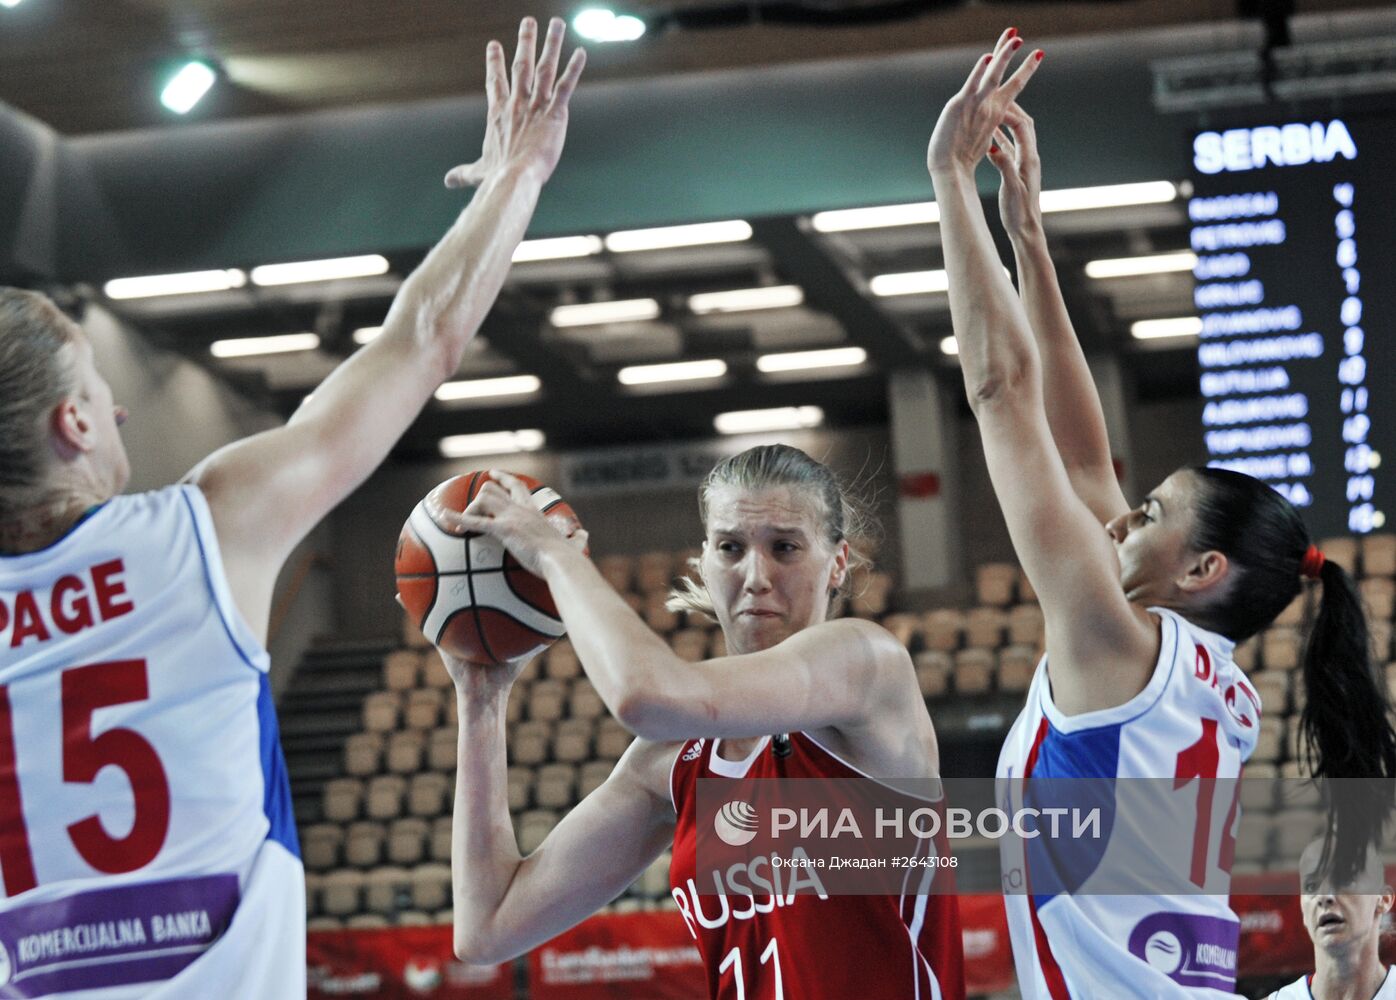 Баскетбол. Чемпионат Европы. Женщины. Матч Сербия - Россия